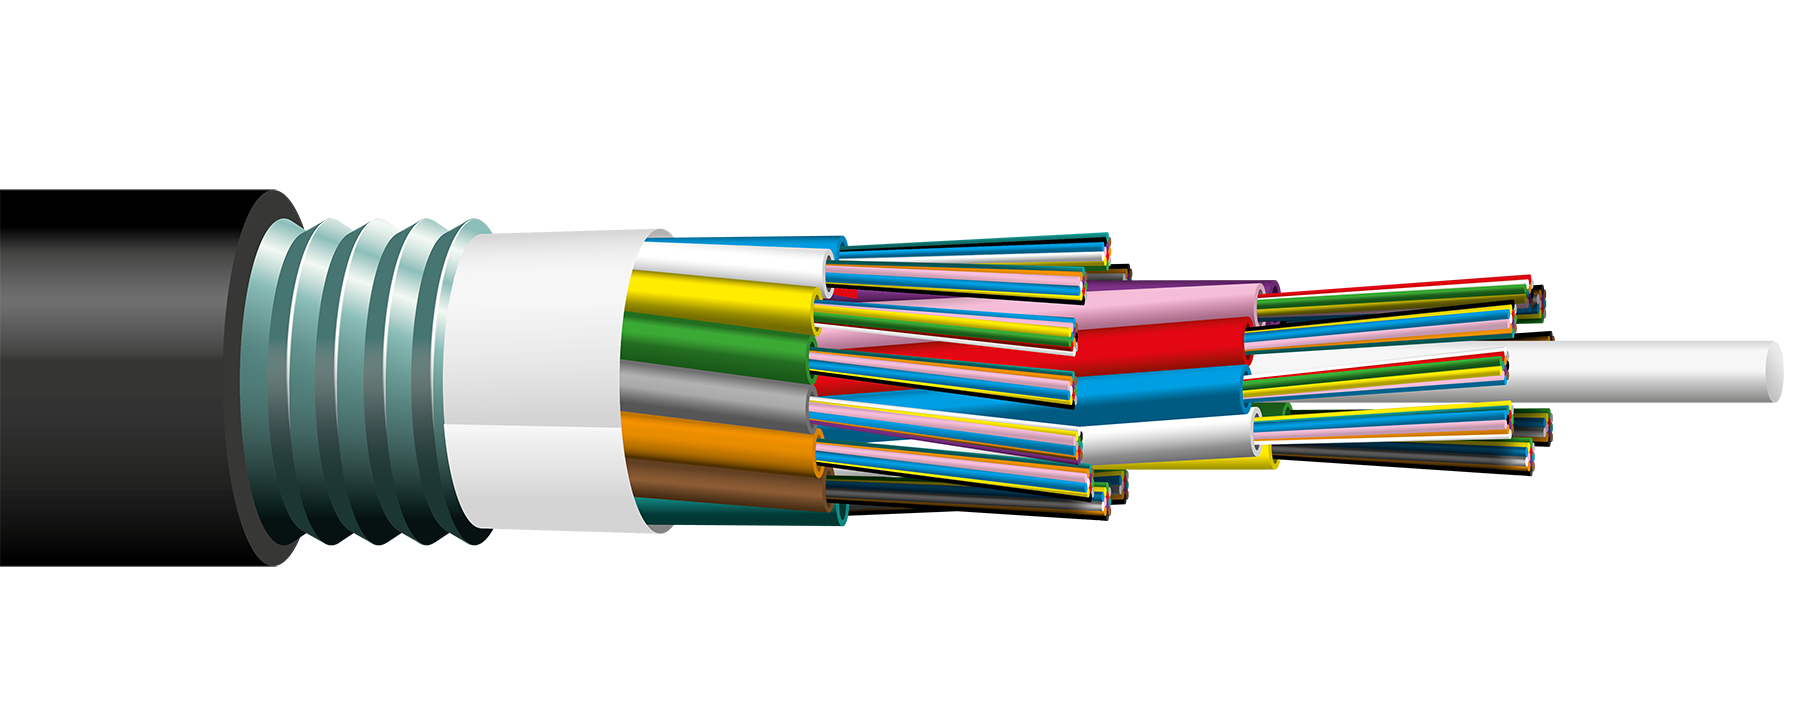 Скопировать кабель. Оптоволоконный кабель АПУНП 3х2.5 мм. Оптоволоконный кабель фибер оптик 2 Core. Волоконно-оптический кабель 20 метров. Оптик кабель ОКБЦ-FRLS-12e.